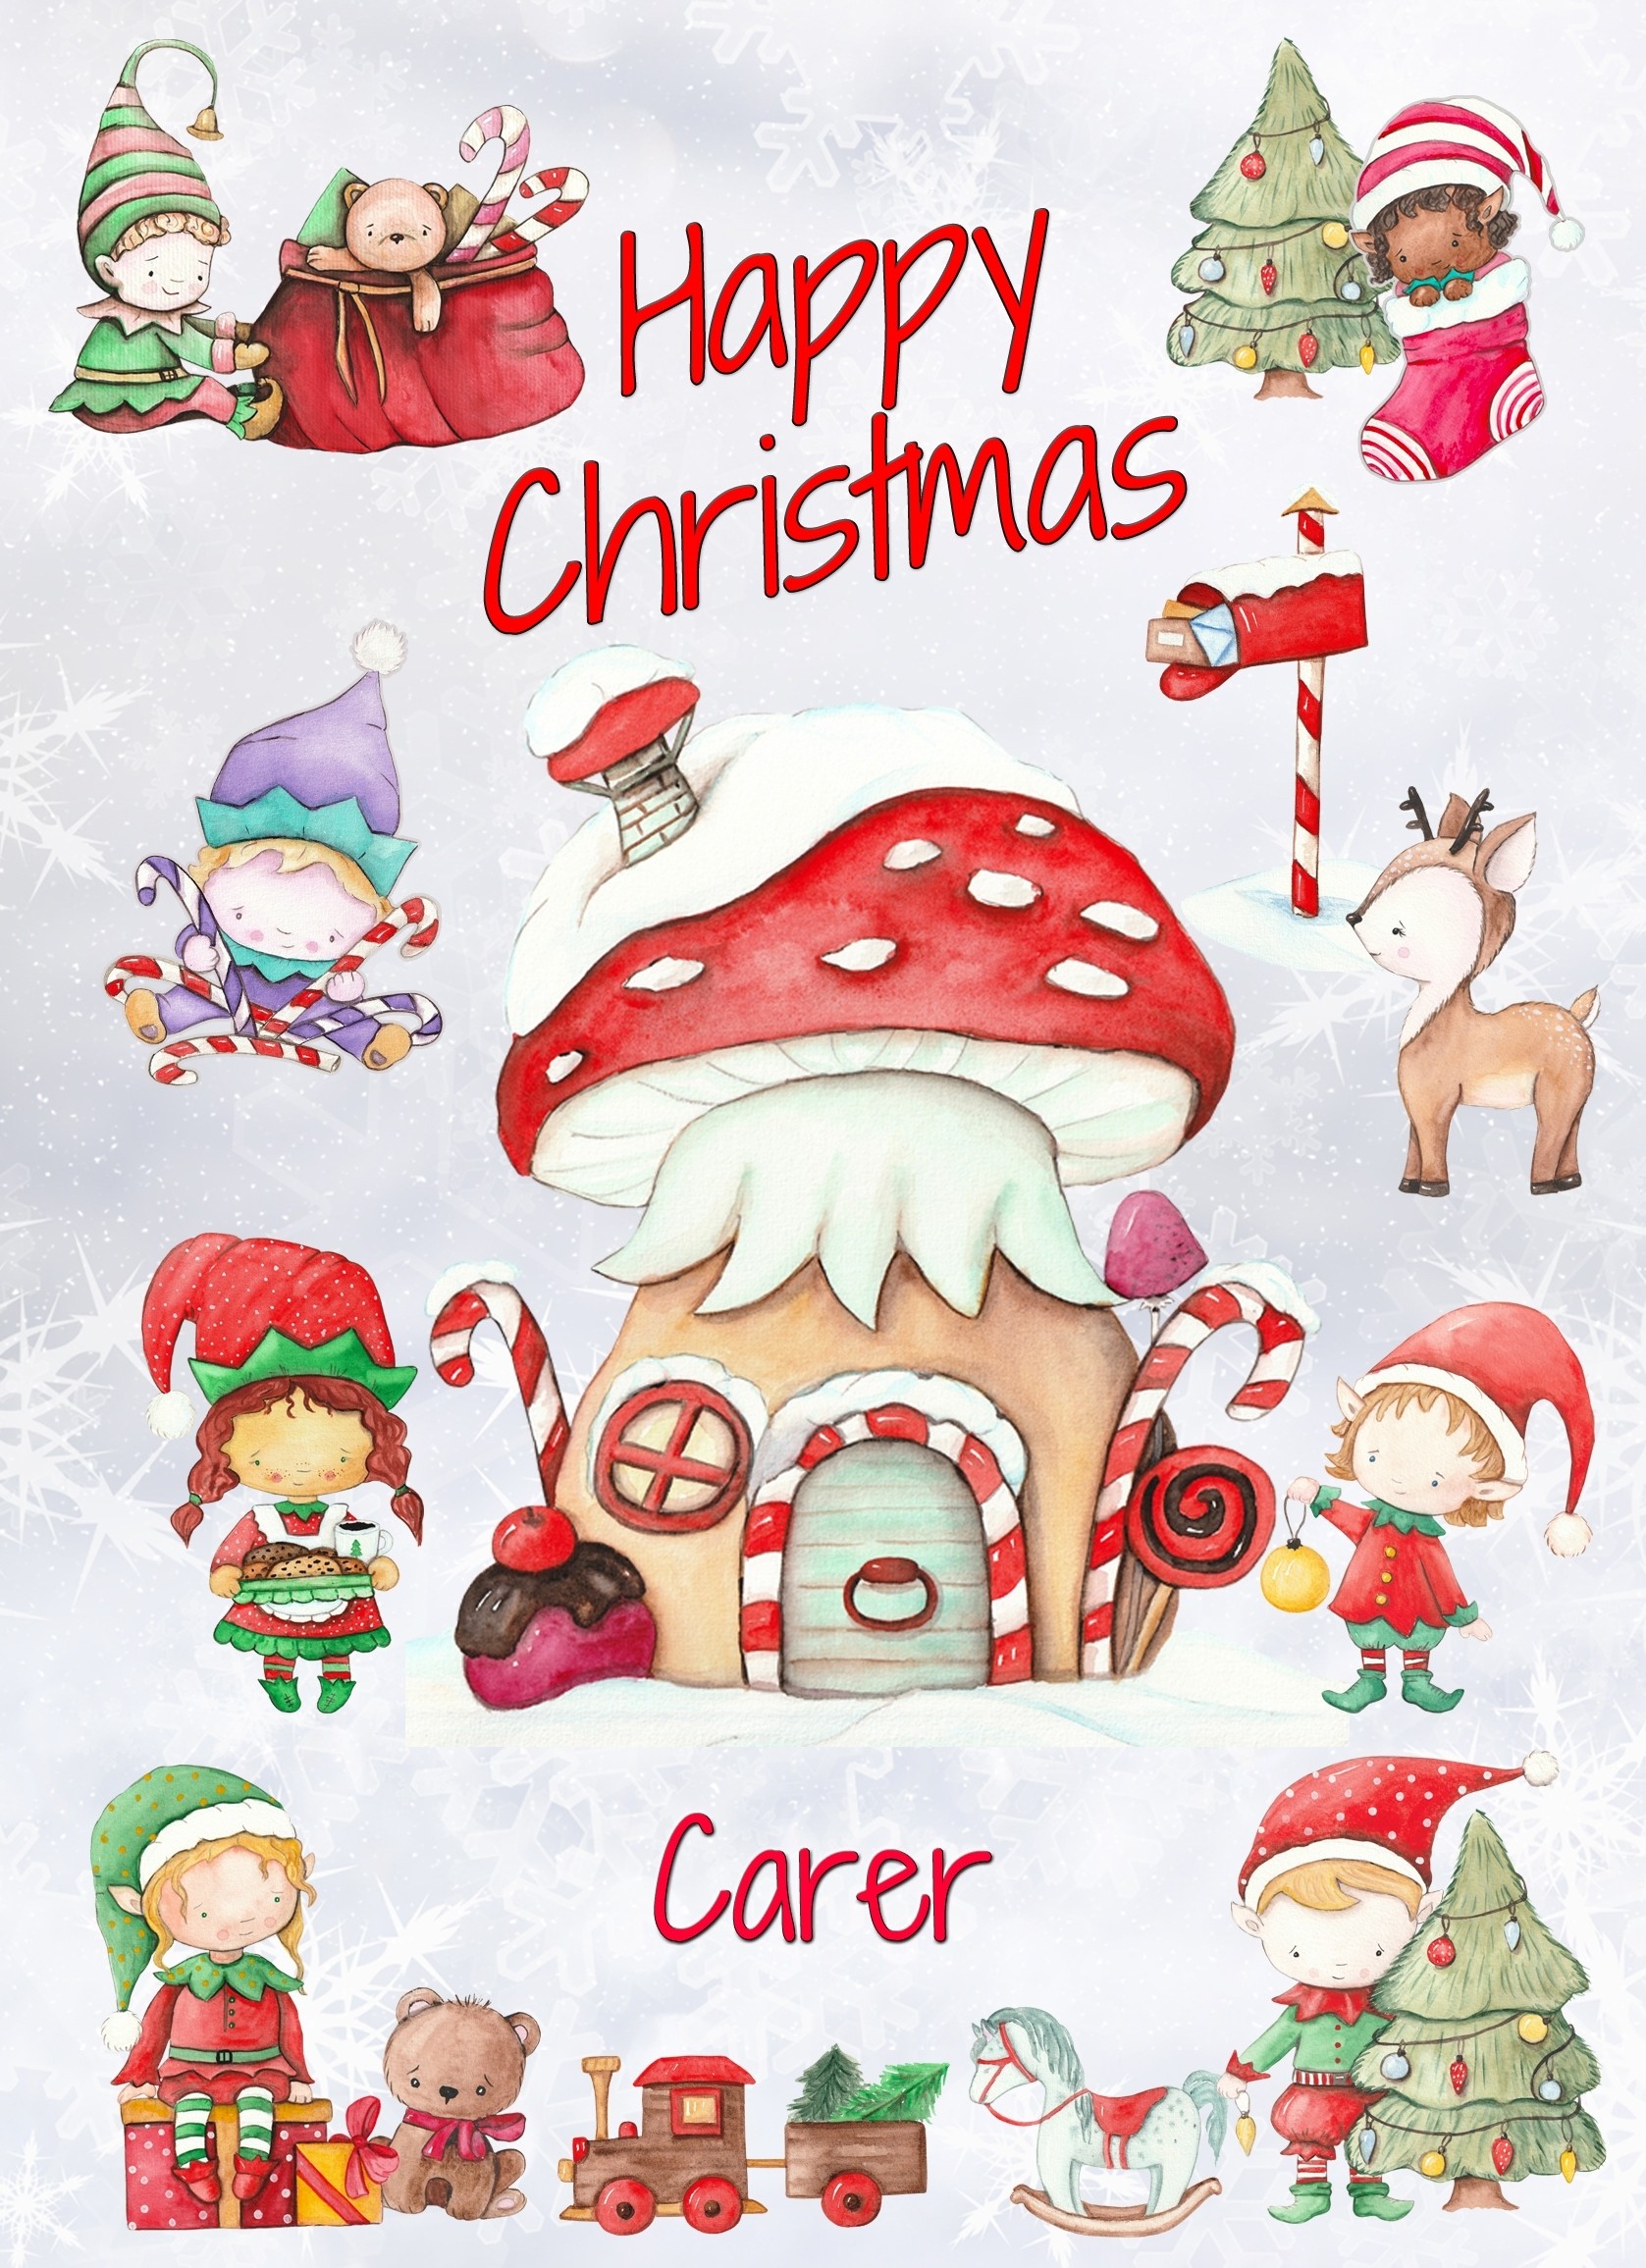 Christmas Card For Carer (Elf, White)